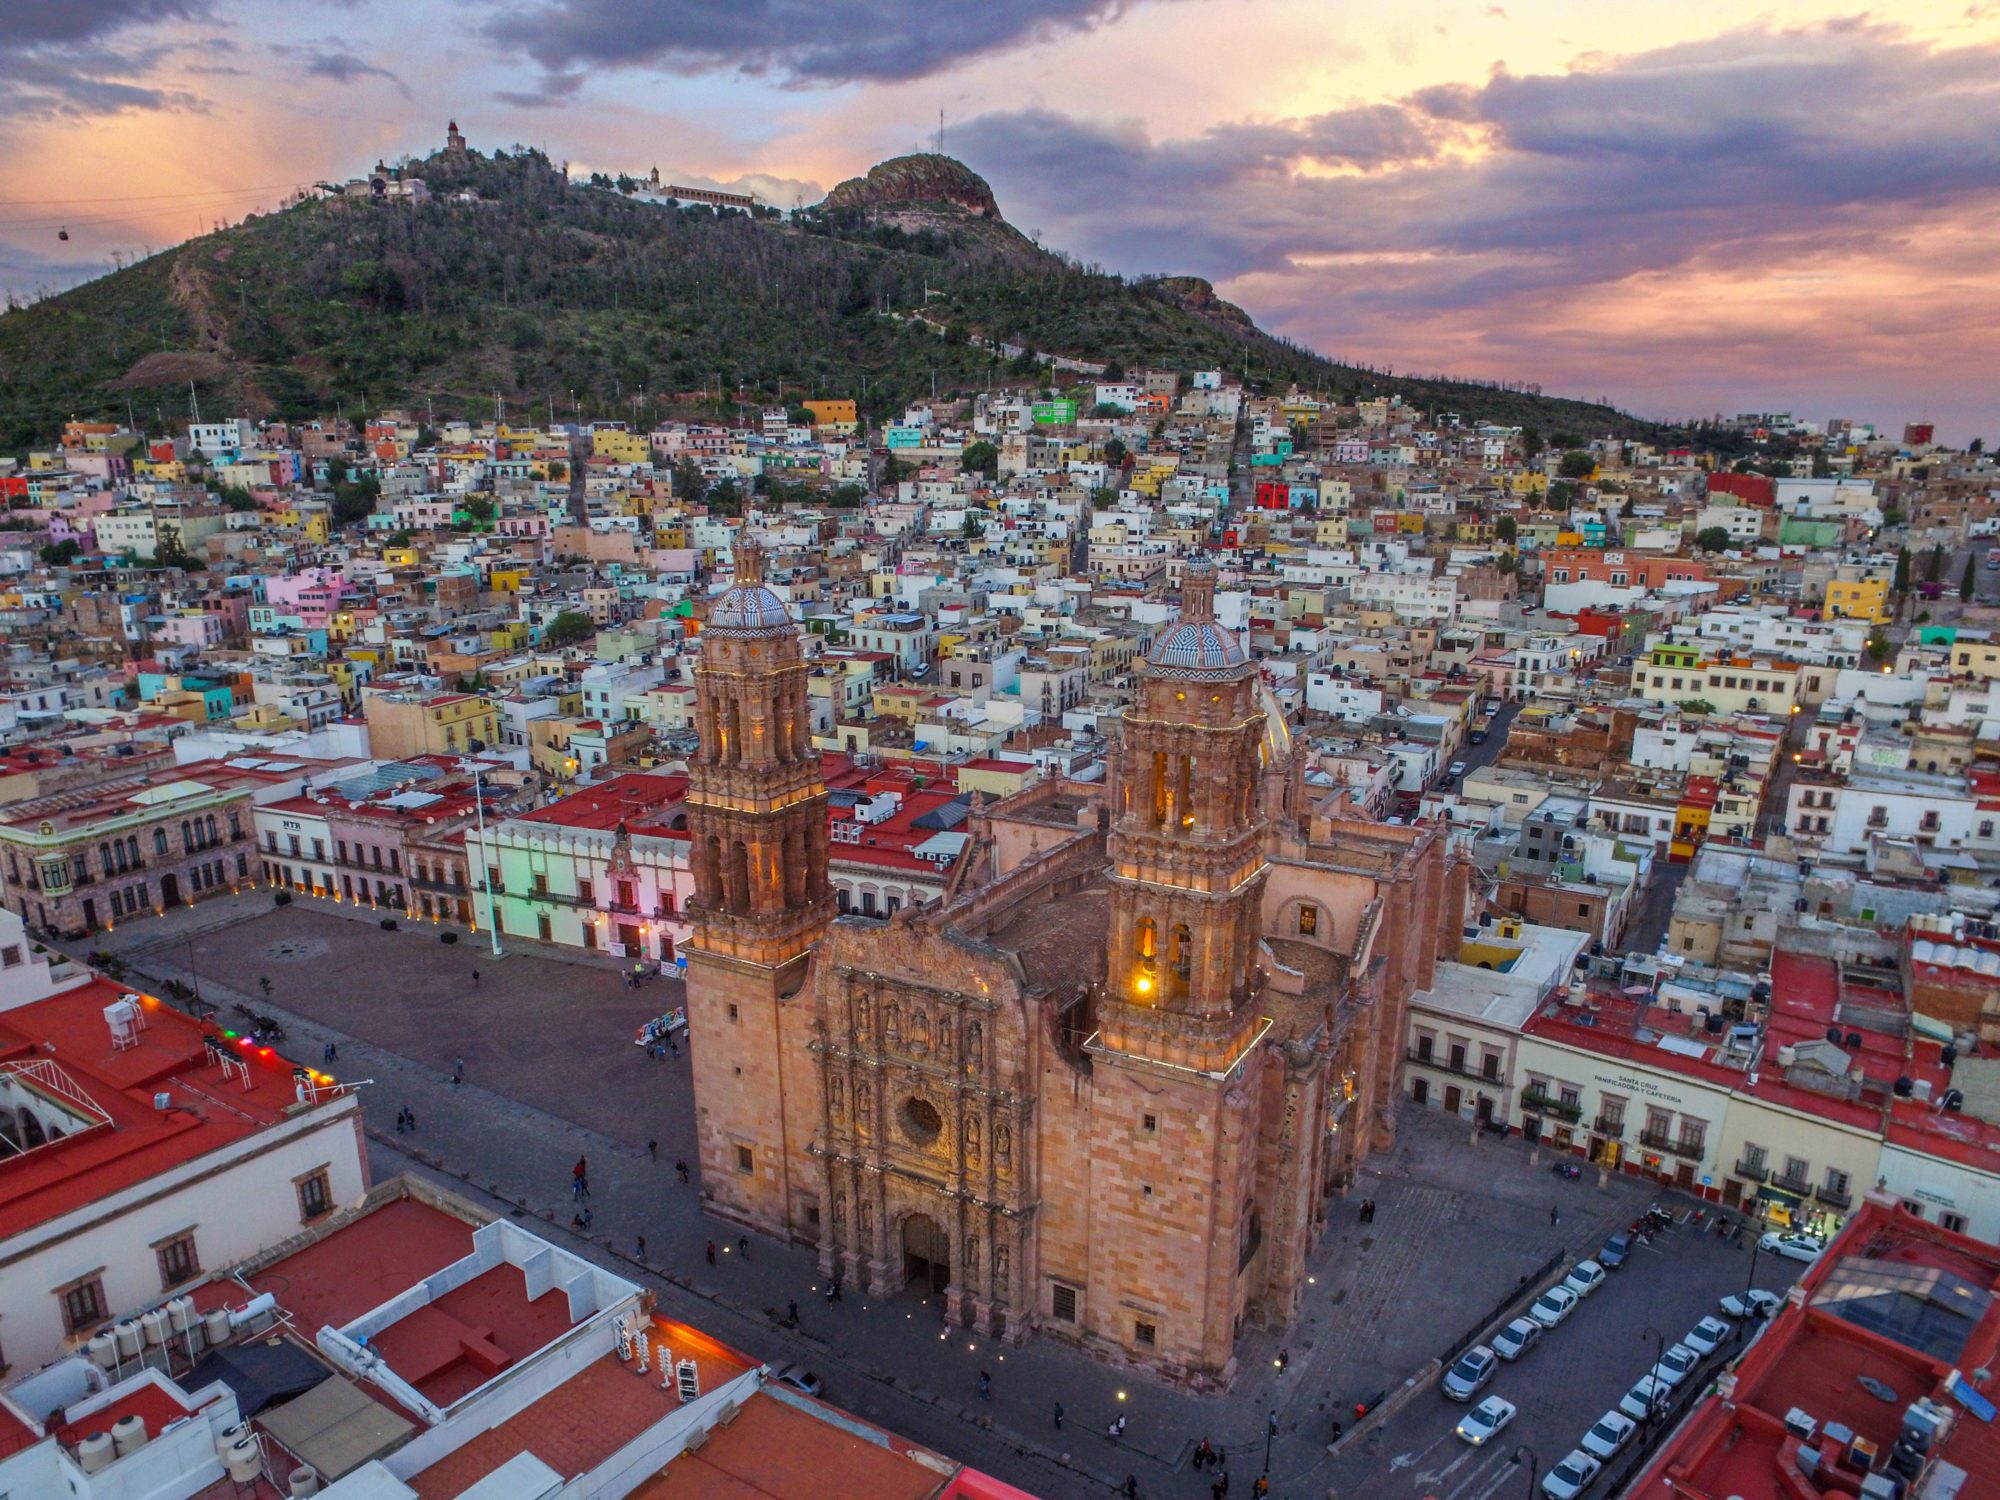 Bellísima imagen de la colonial ciudad de Zacatecas, visita imperdible para todos los asistentes al Campeonato Nacional Charro 2022